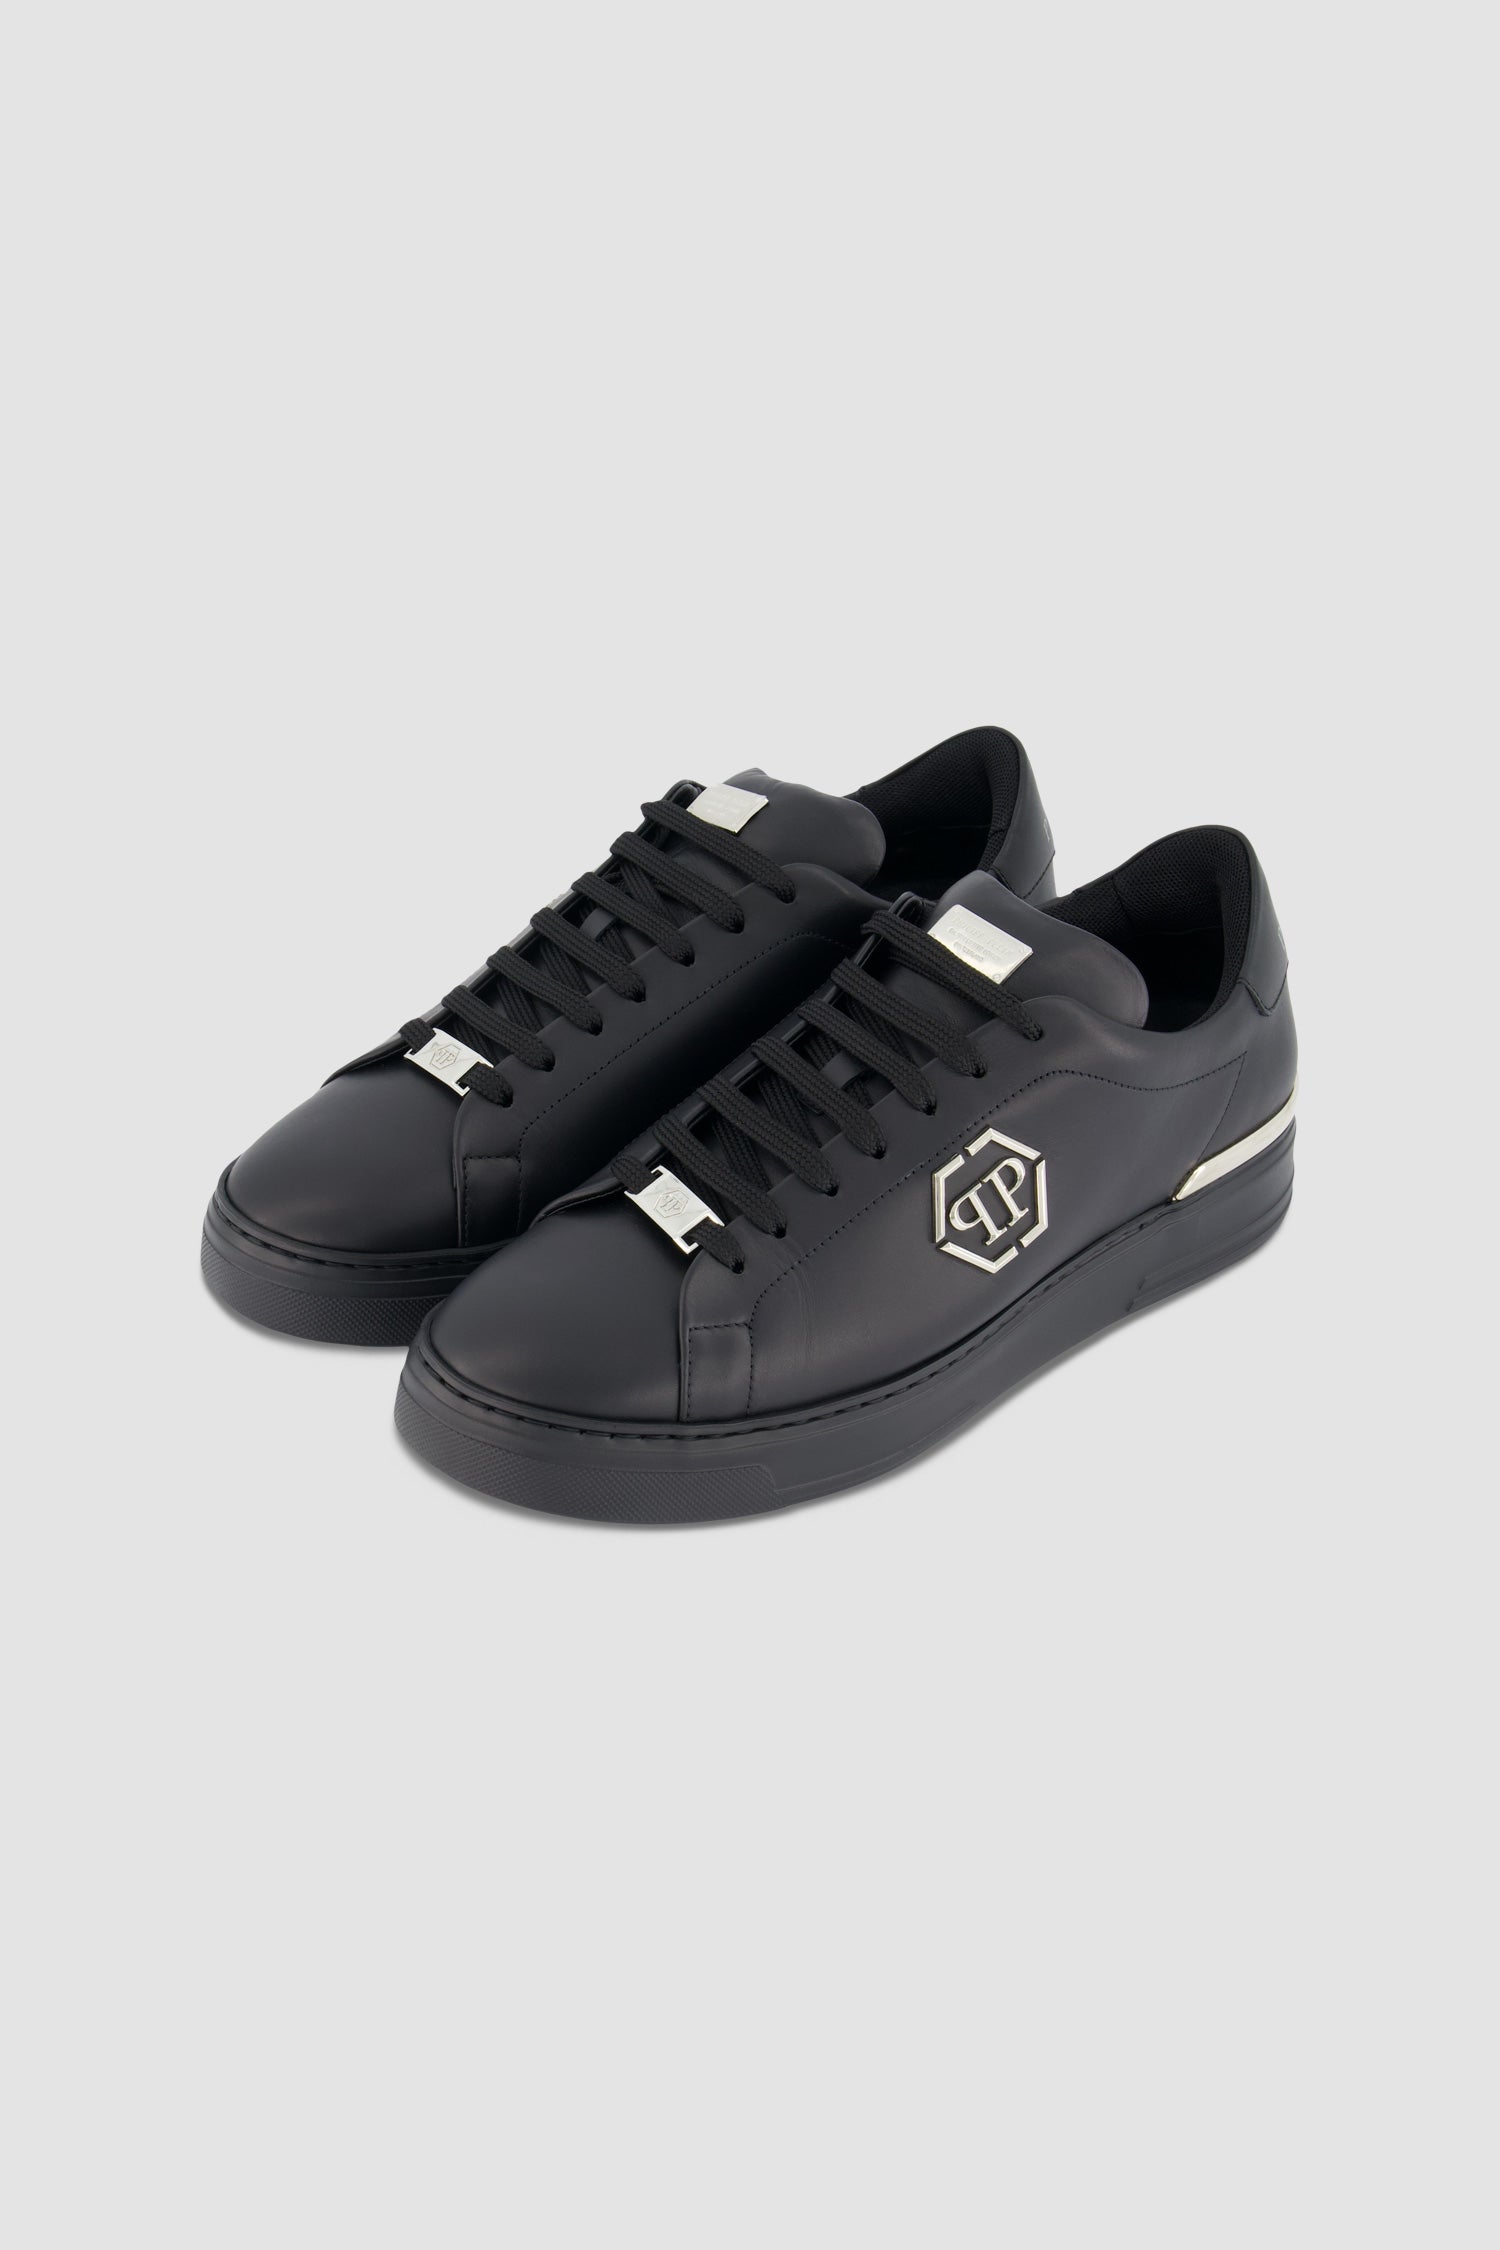 Philipp Plein Black Leather Lo-Top Hexagon Sneakers